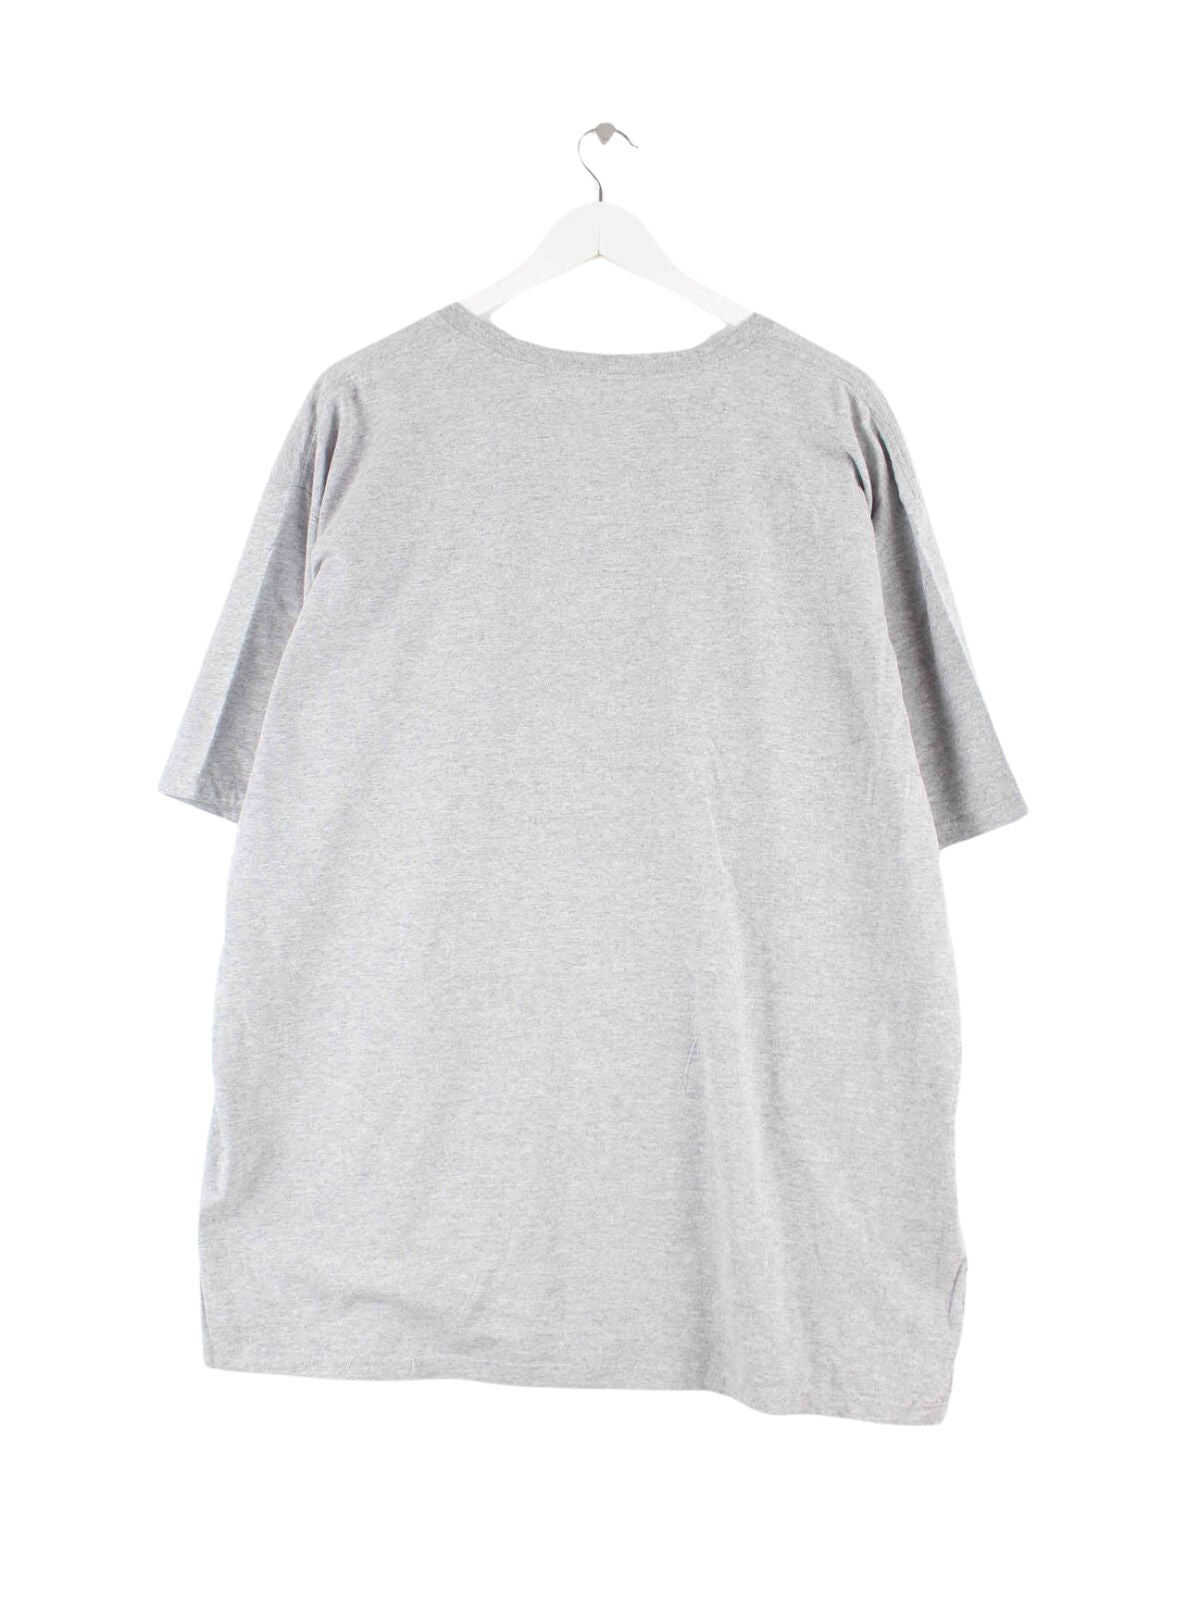 Adidas NBA 2012 OKC Print T-Shirt Grau XXL (back image)